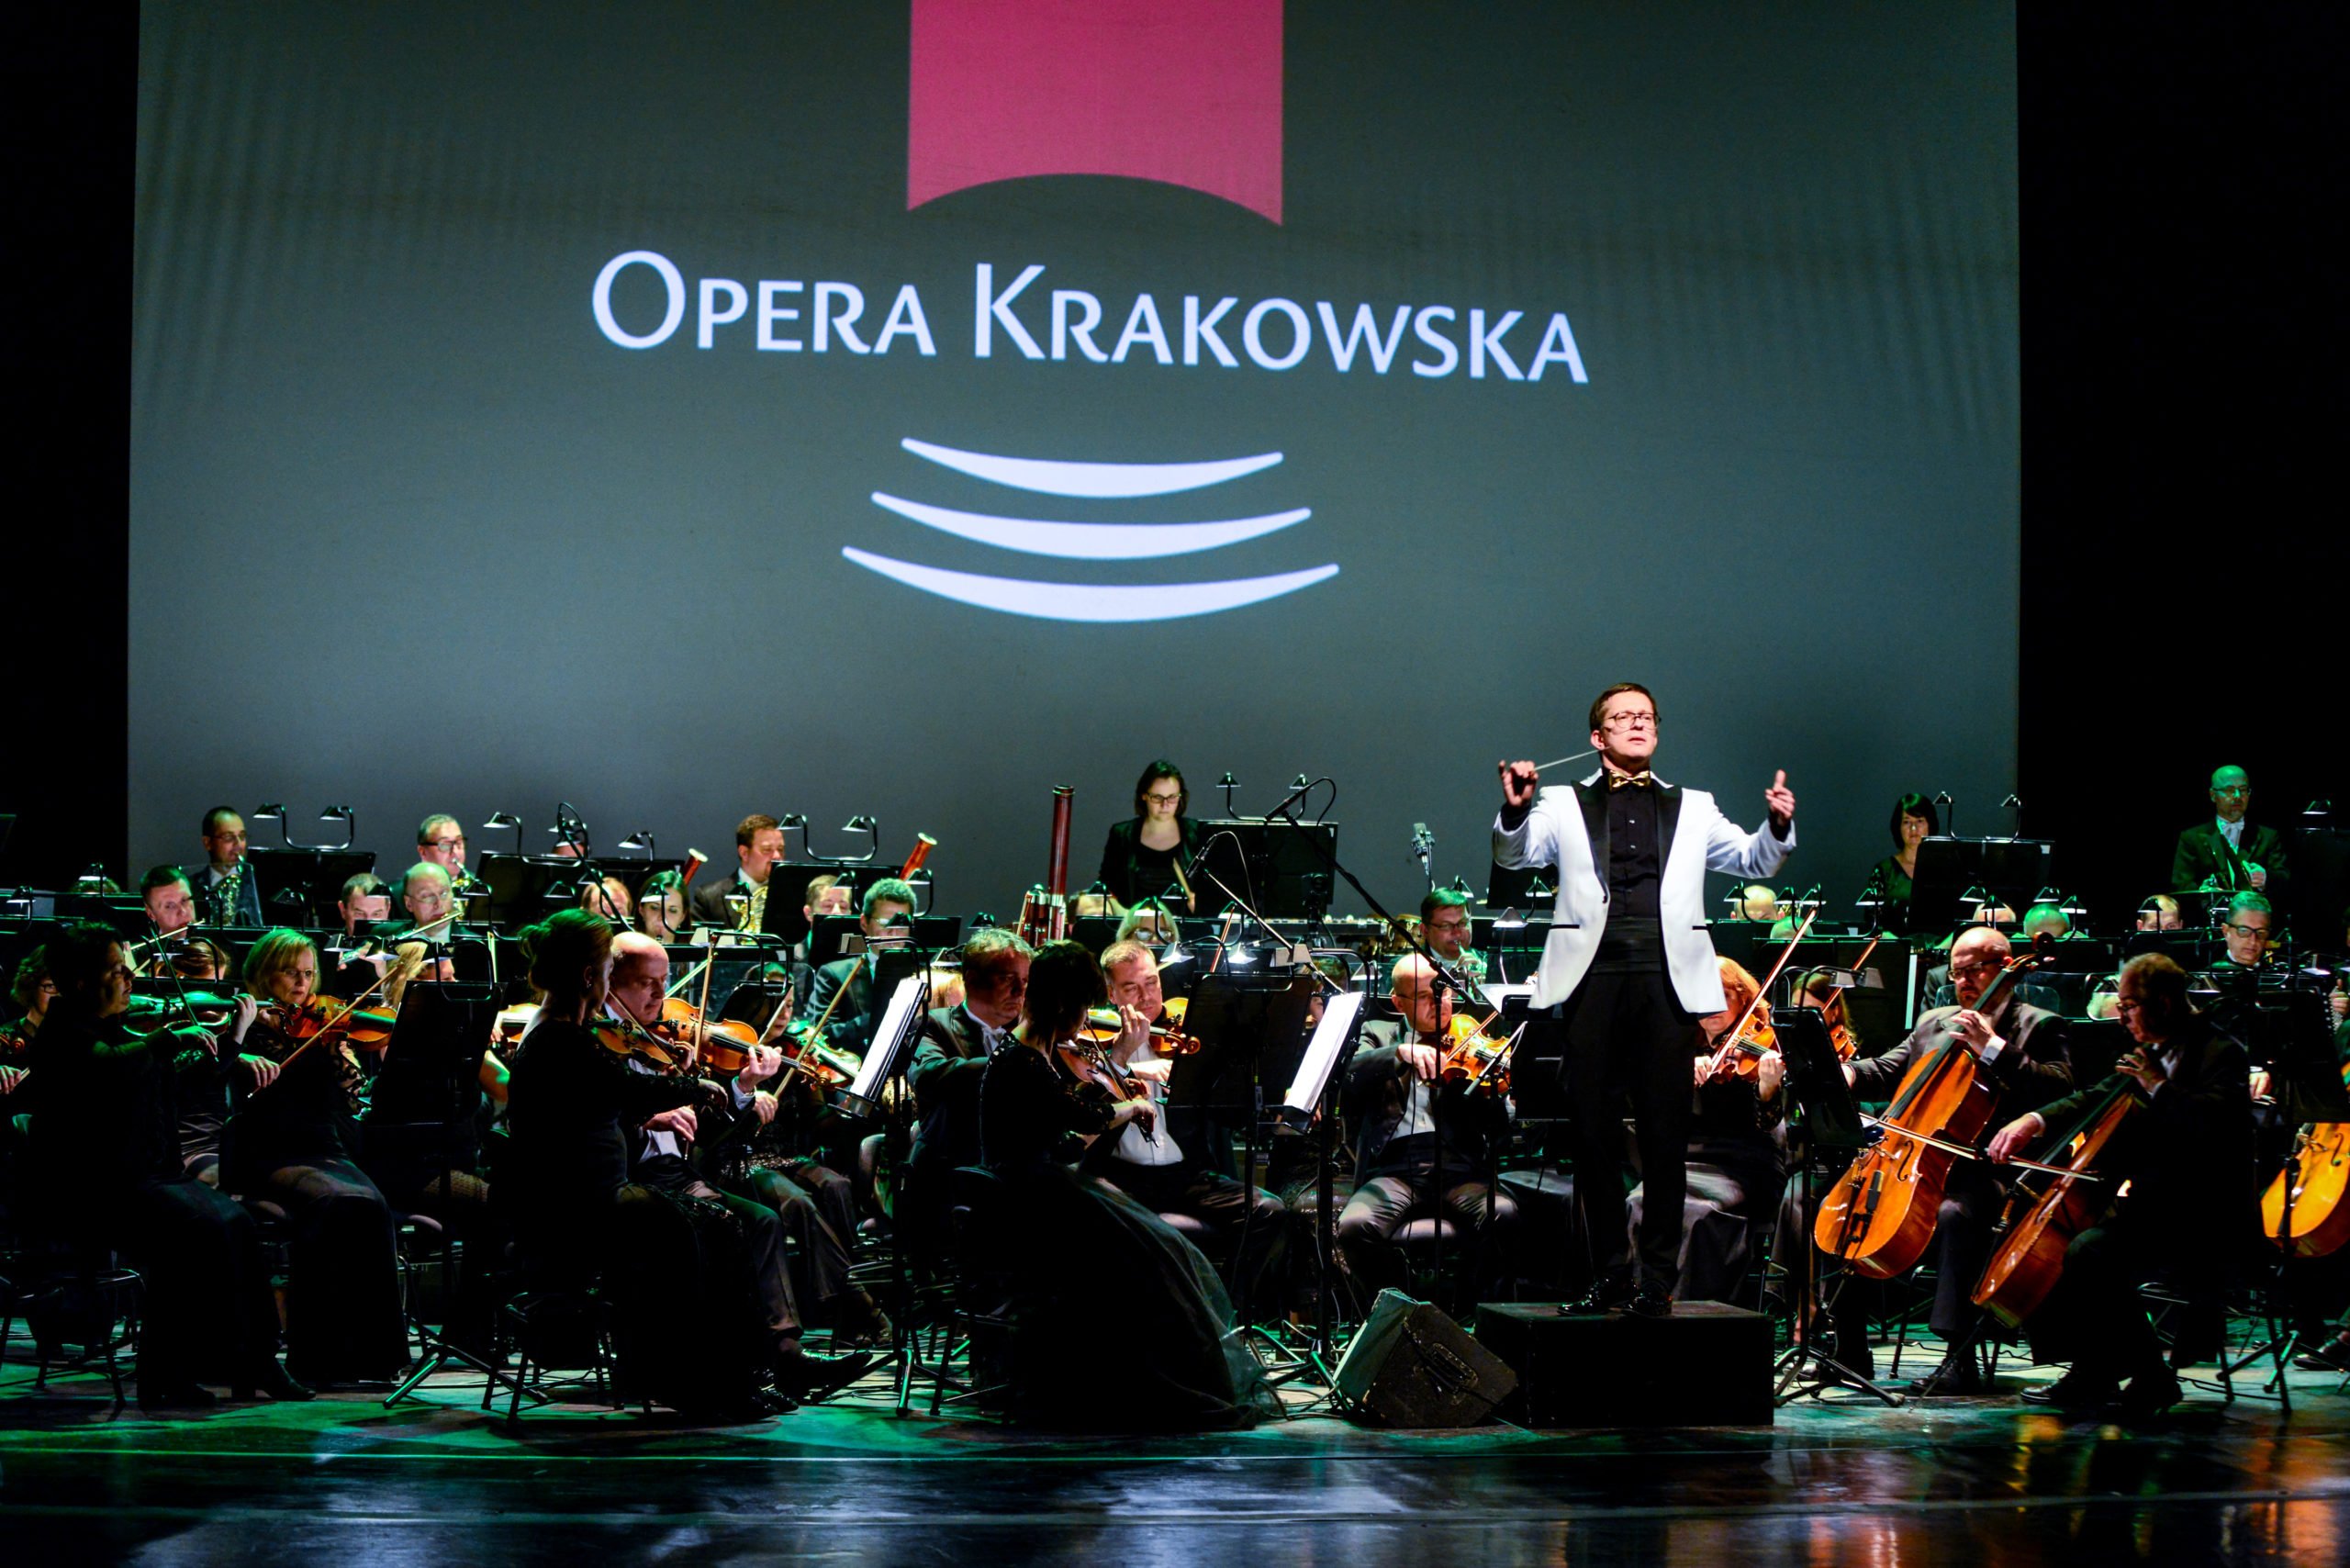 Niezwykły koncert w Operze Krakowskiej. Widzowie sami tworzą program!